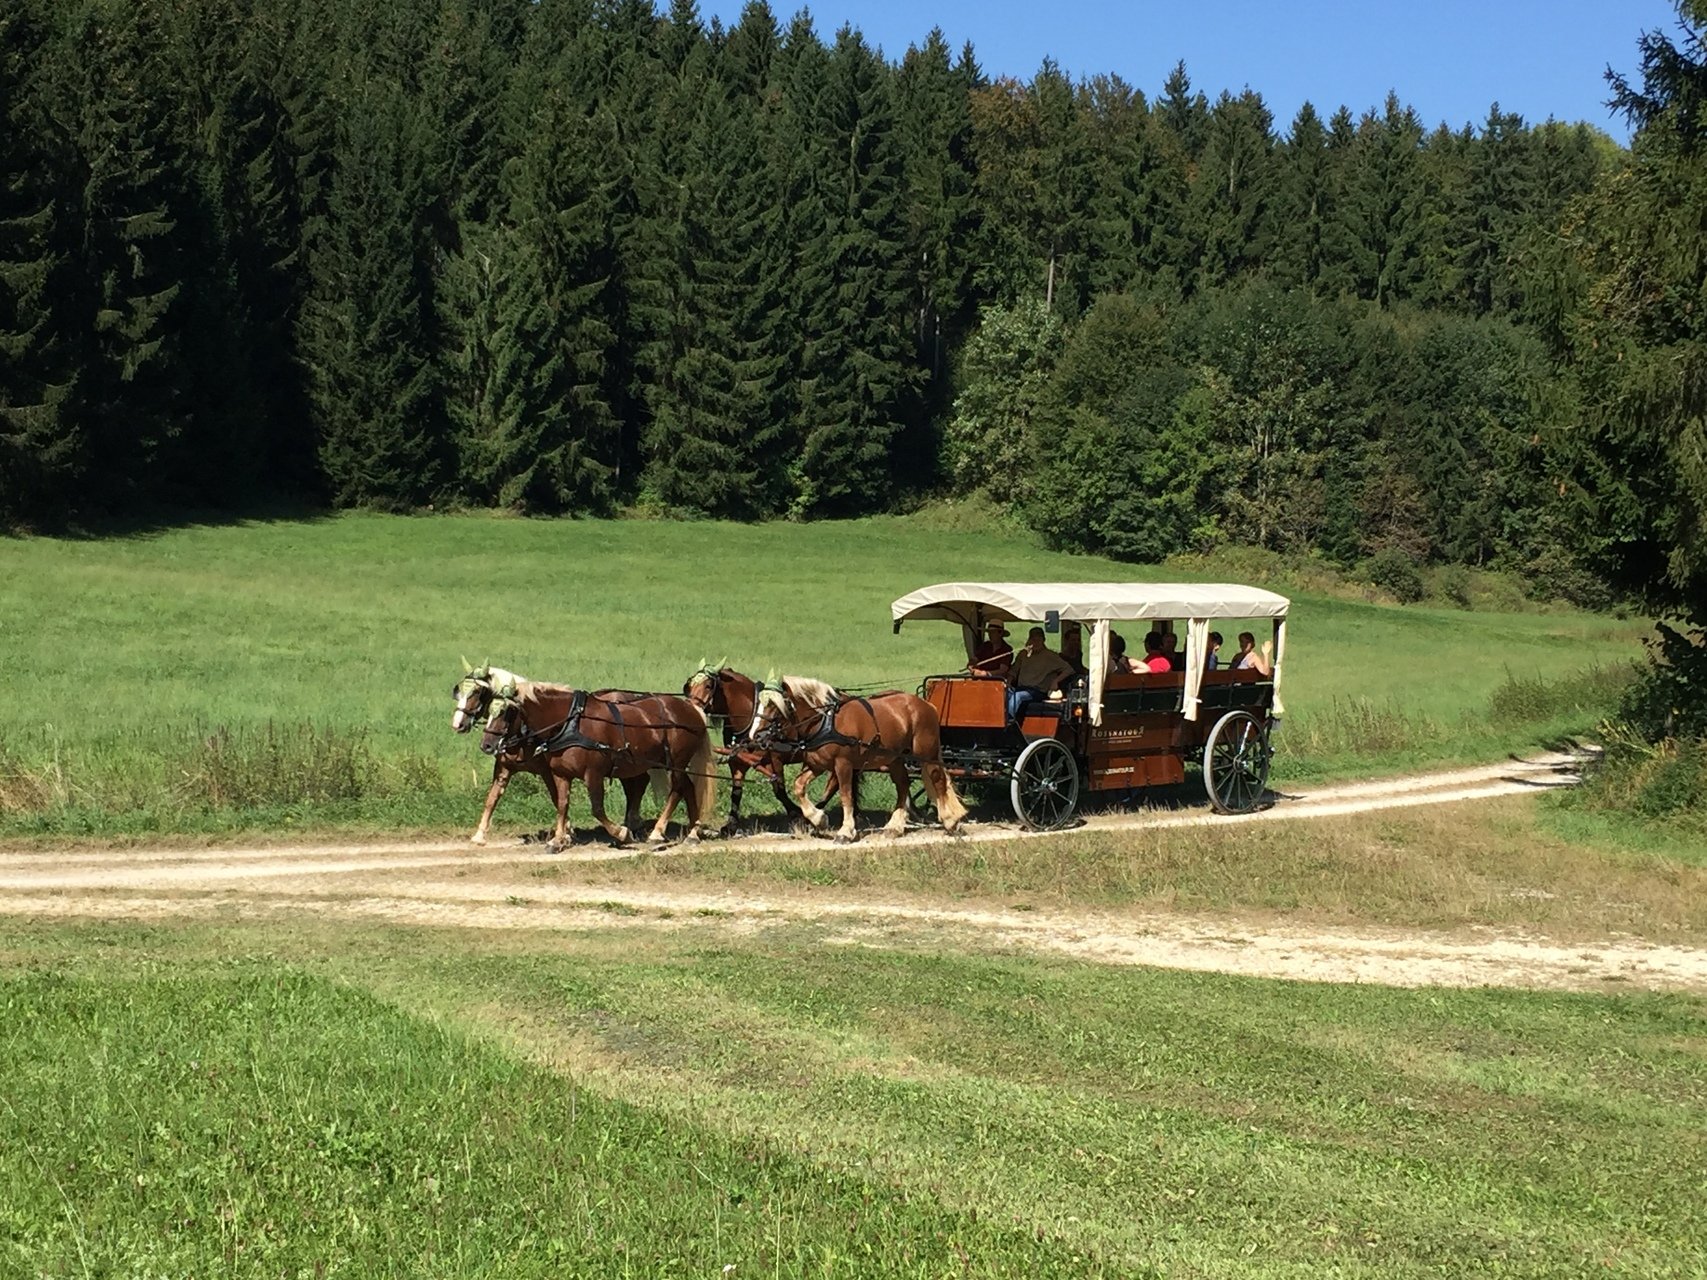 Kutschfahrten in Münsingen im Biosphärengebiet Schwäbische Alb. Ein Planwagen wird von vier Pferden auf einem Schotterweg durch die Sommerlandschaft gezogen. Auf dem Wagen sitzen mehrere Personen. Im Hintergrund ist Wald.